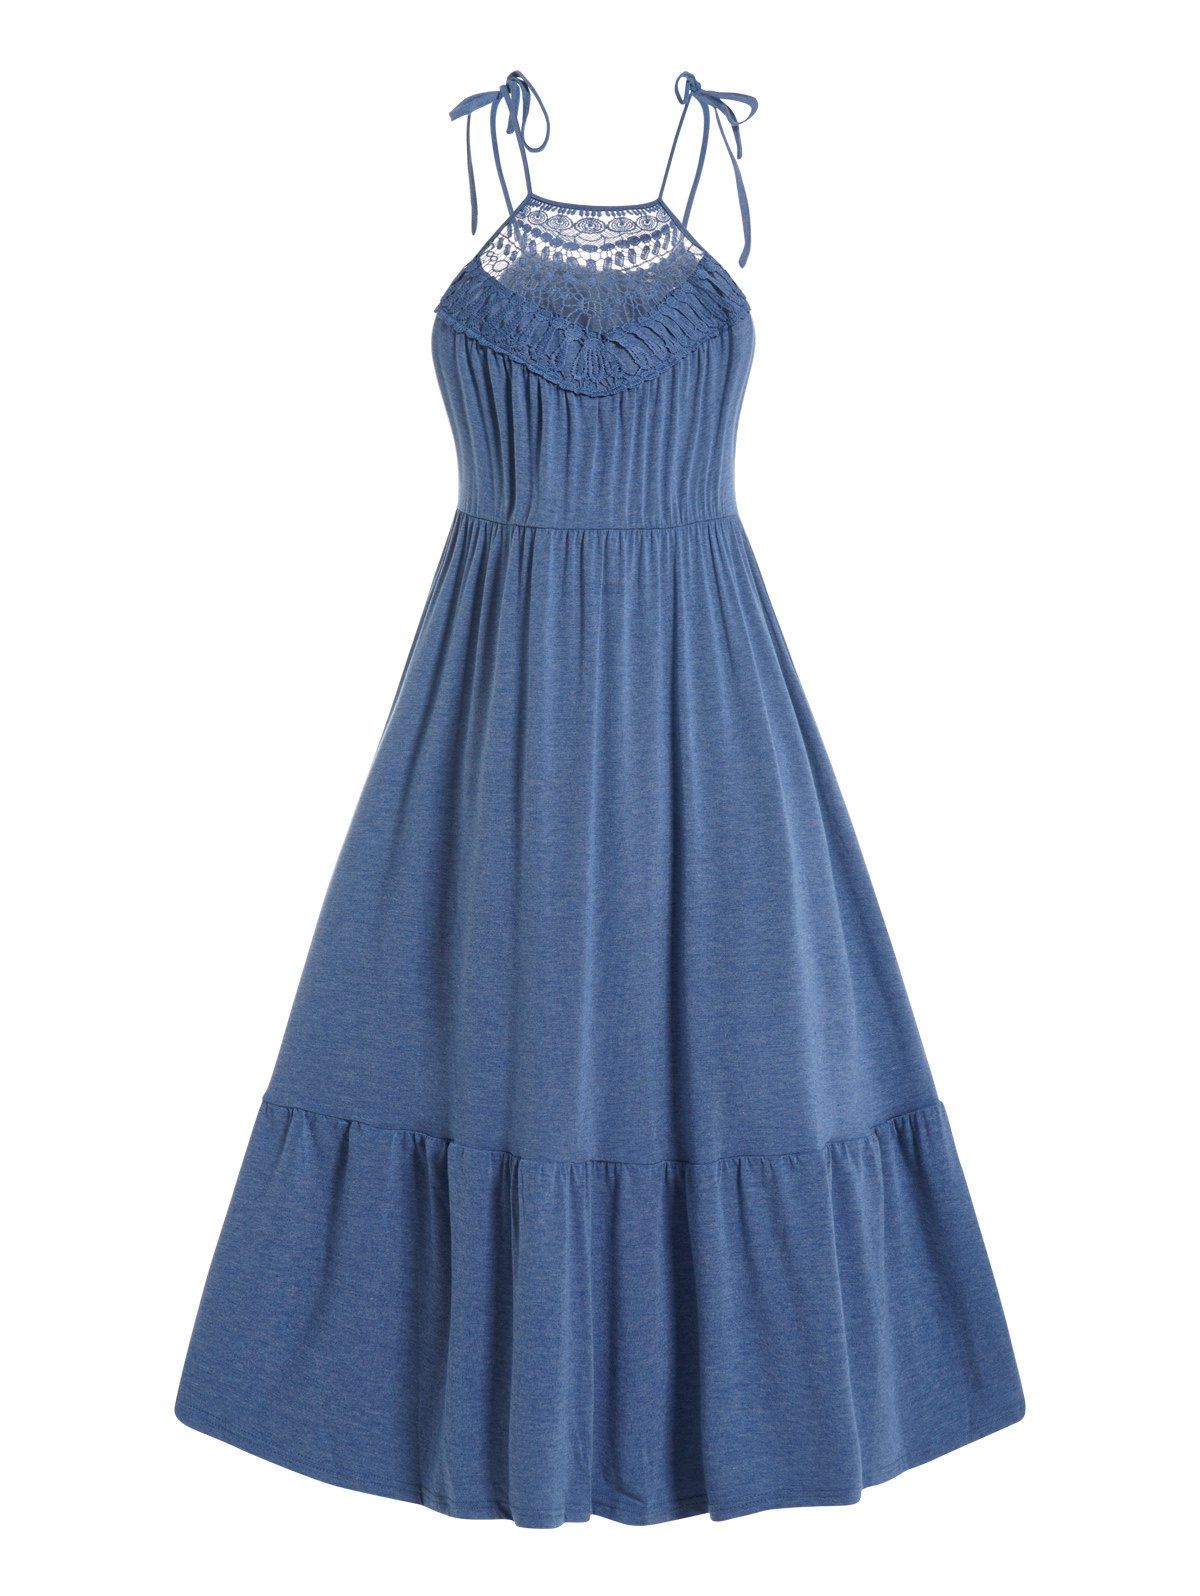 Tied Shoulder Tiered Dress Plain Color Hollow Out Lace Panel Trapeze Midi Dress - BLUE XL